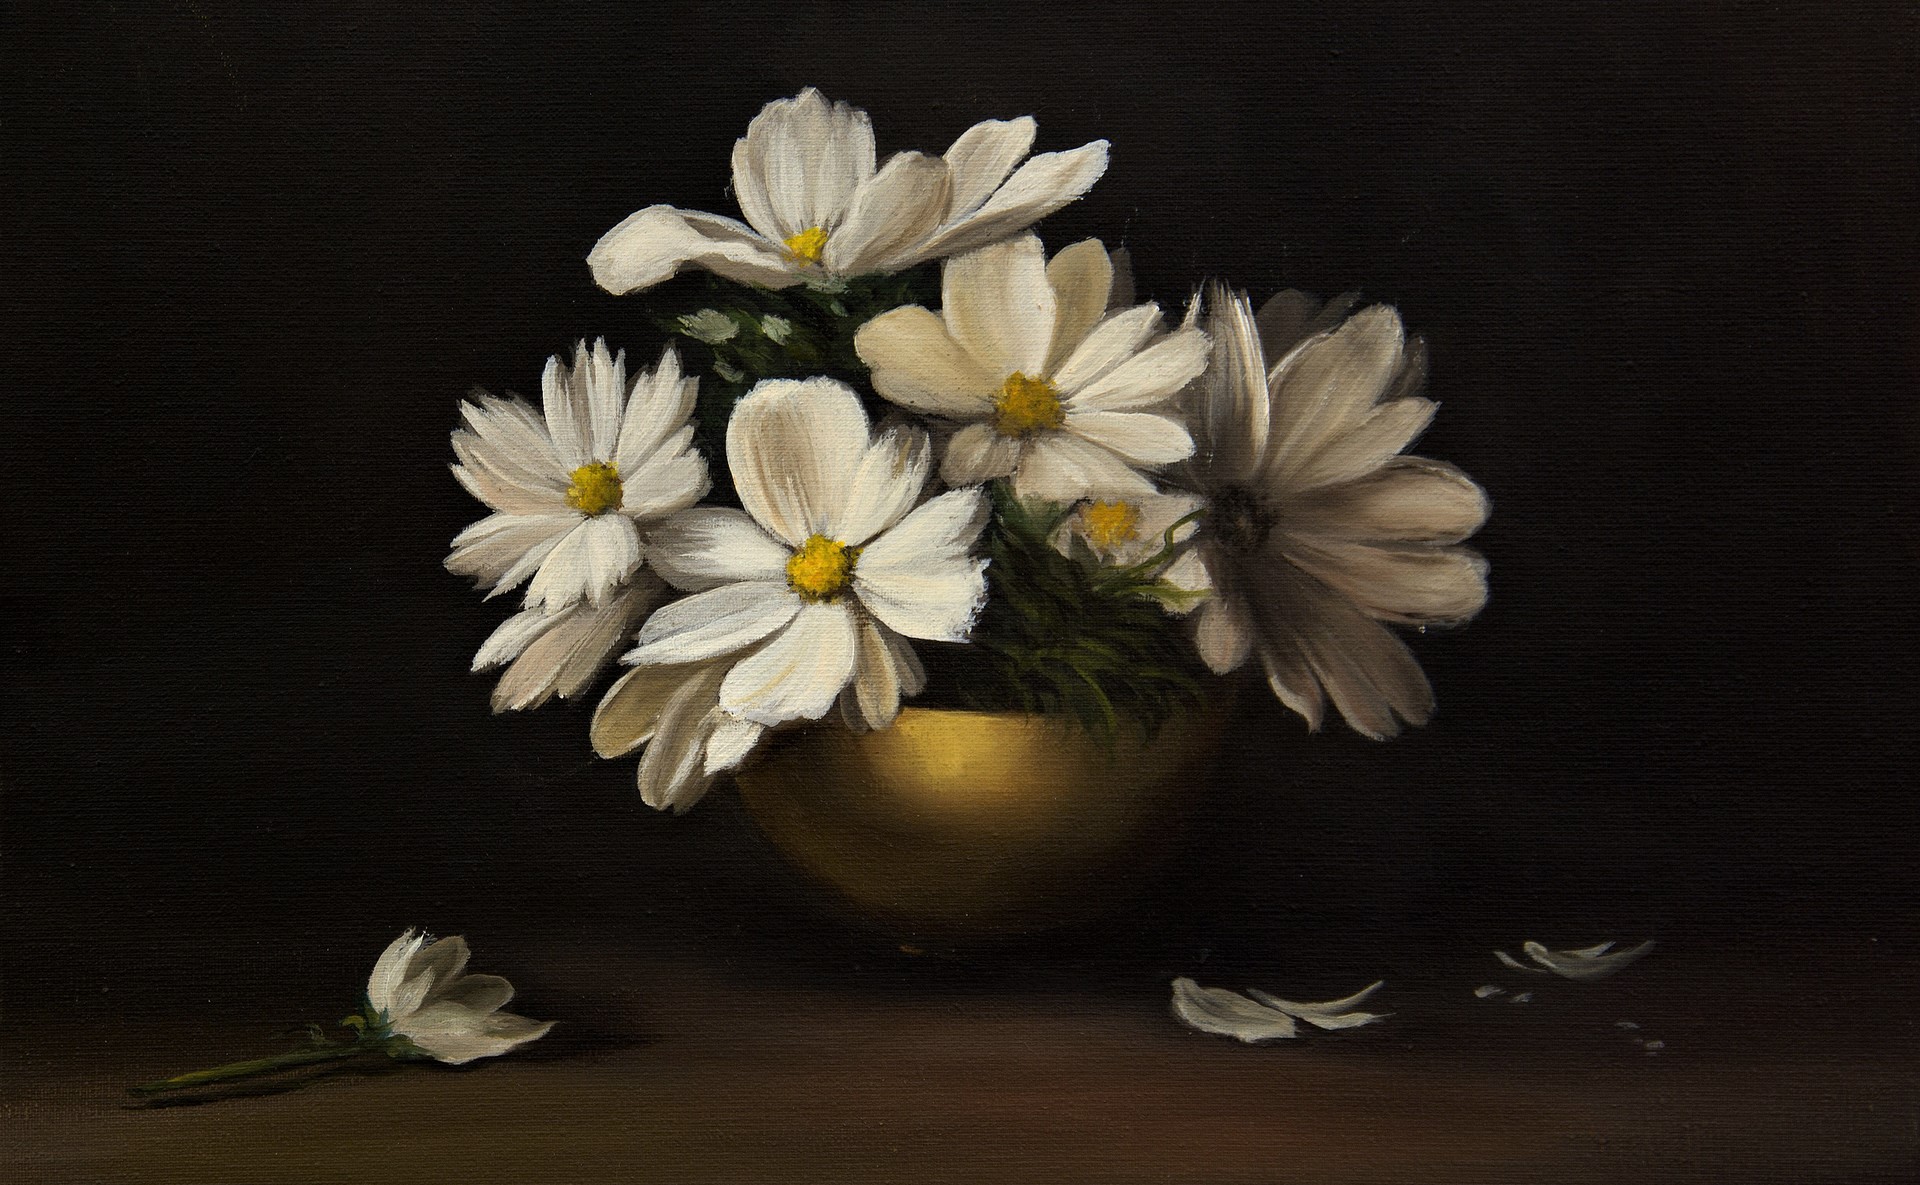 artistic, painting, bowl, flower, still life, white flower